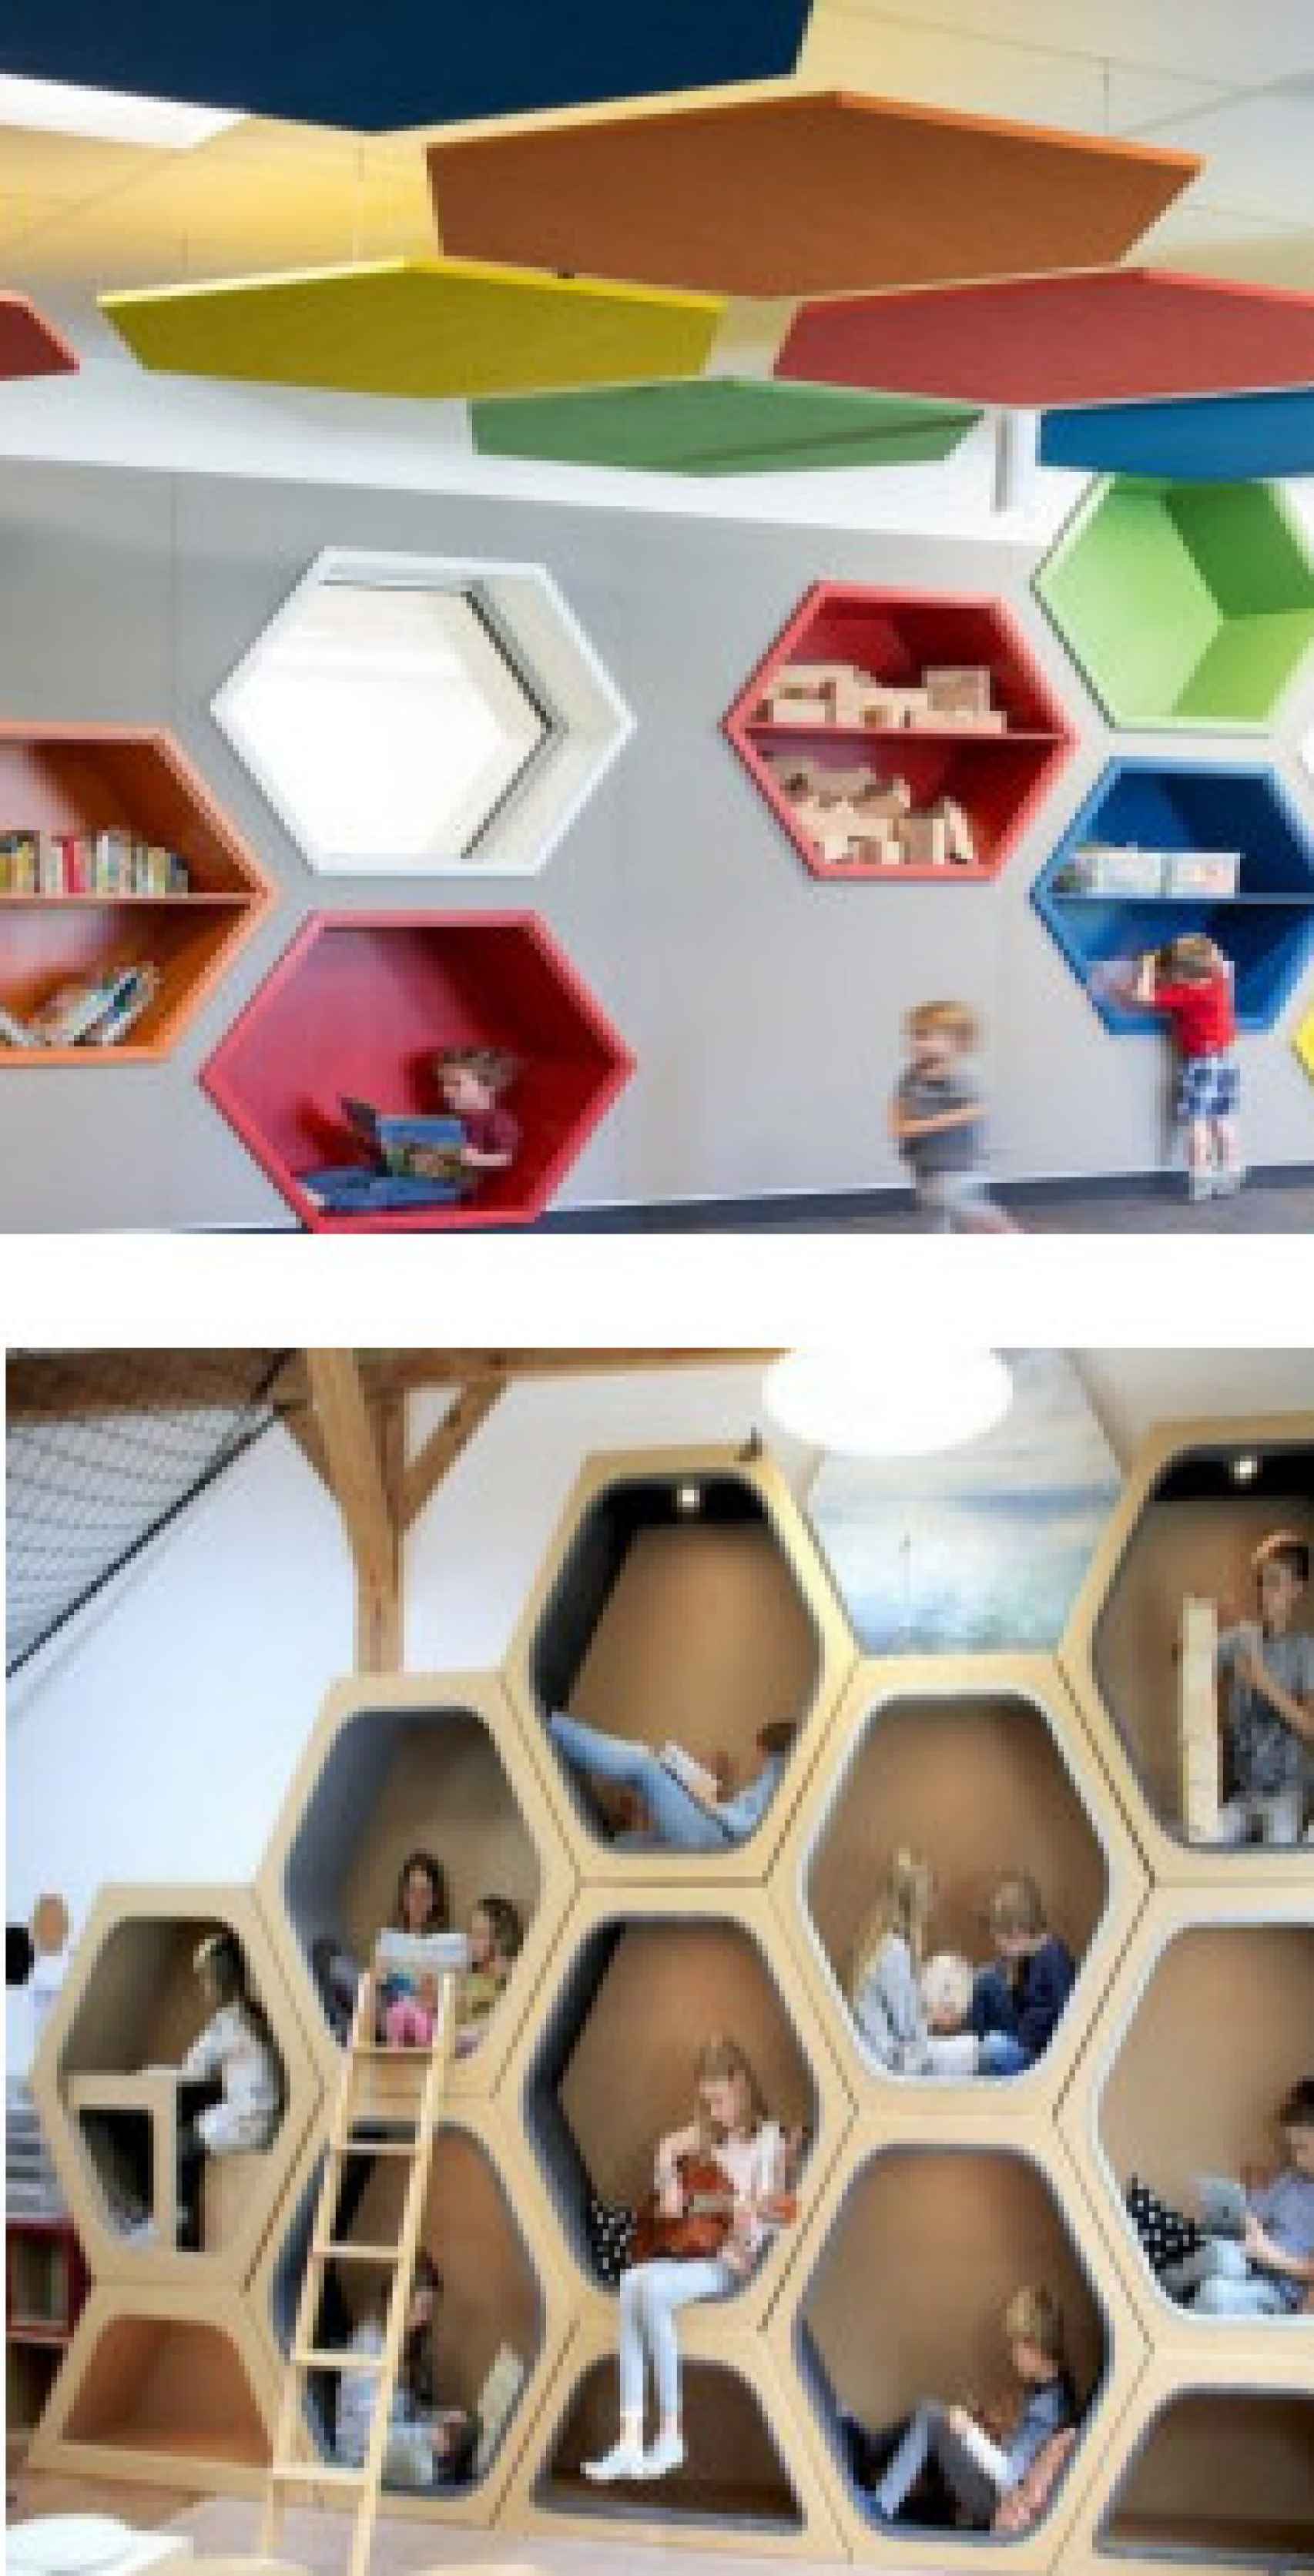 Detalles del mobiliario de la futura Sala Infantil.